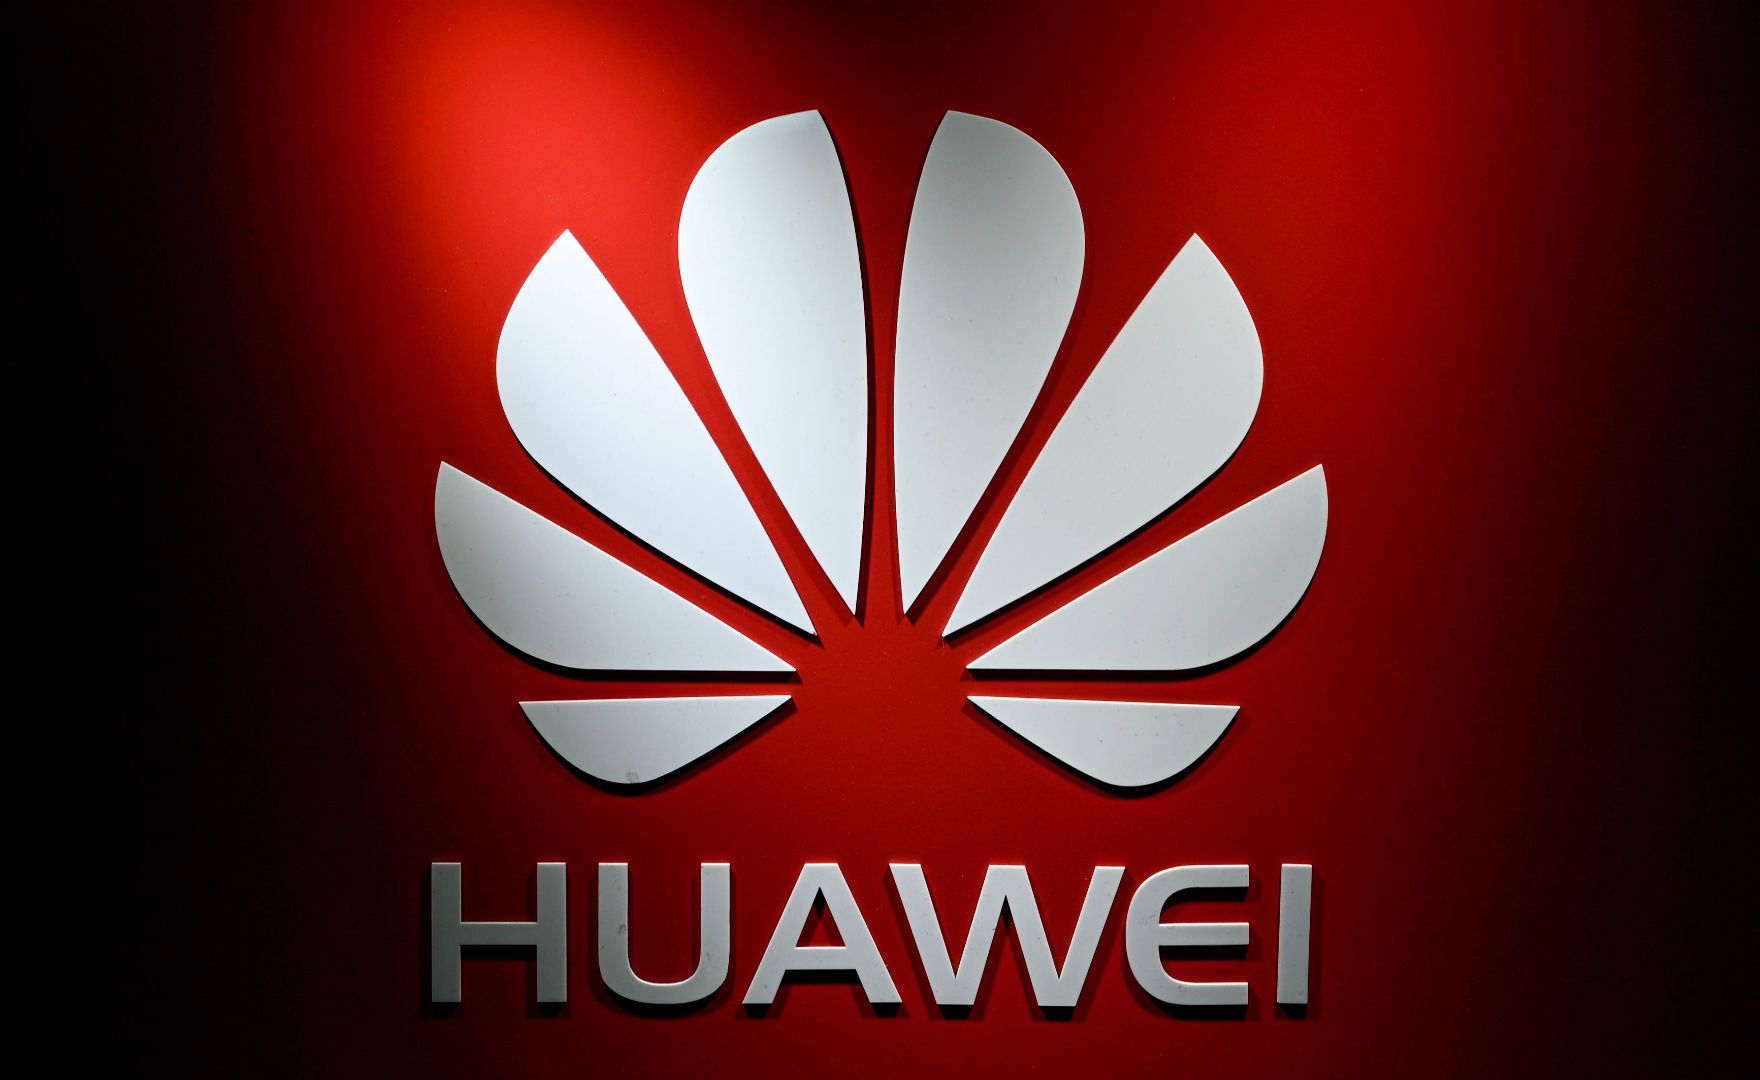 Huawei, adesso che succede con Android? Ecco lo scenario più probabile